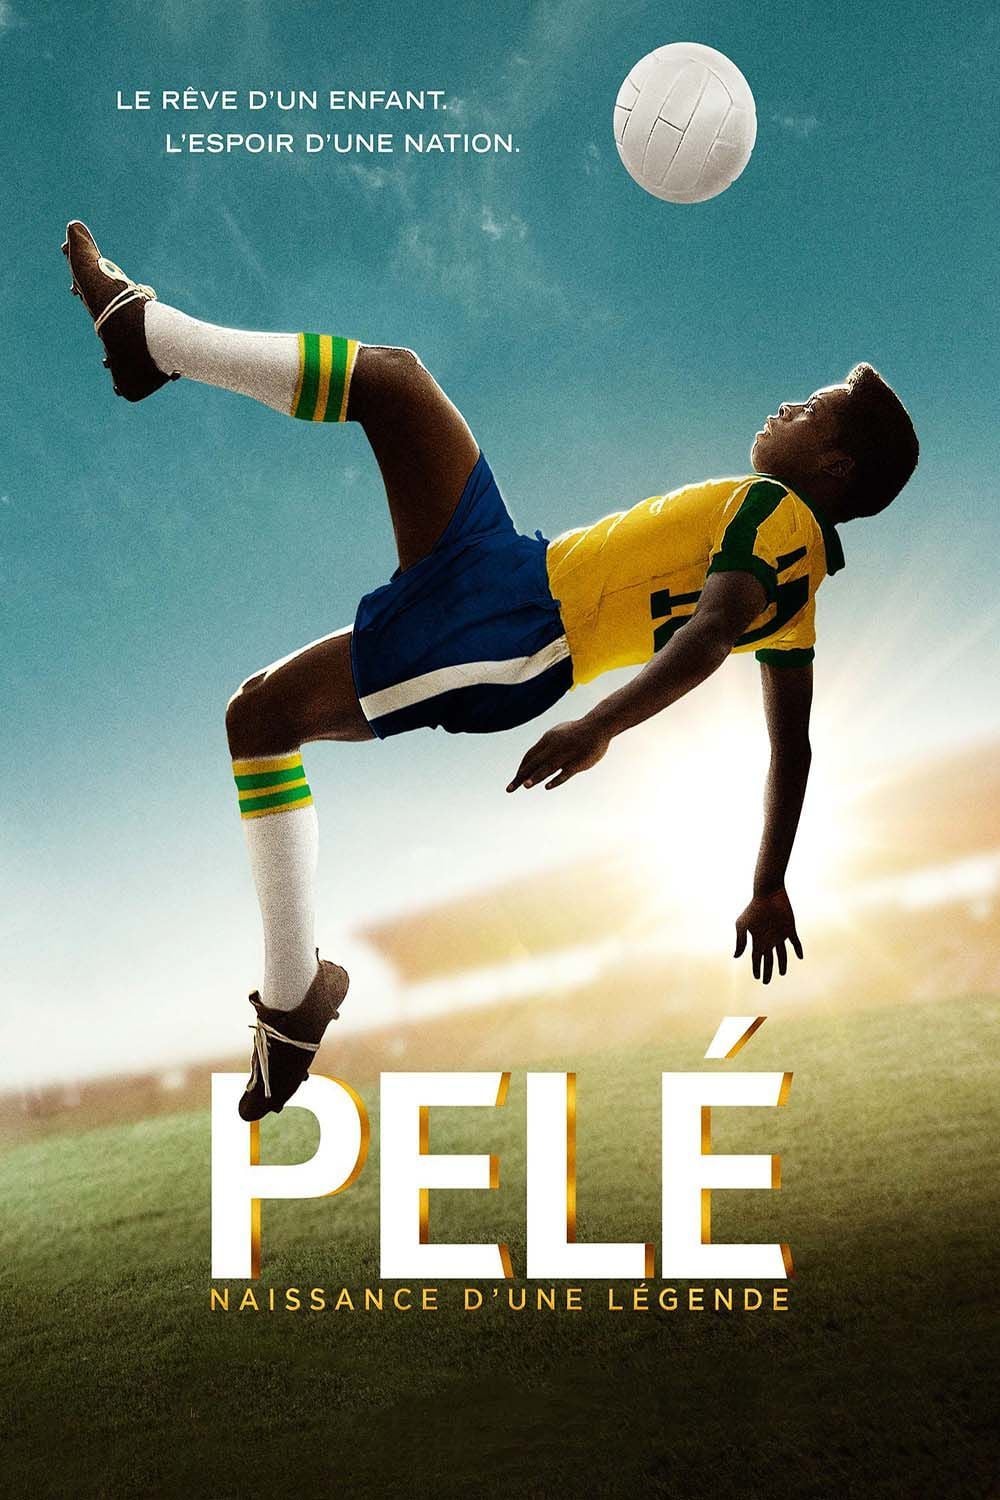 Affiche du film "Pelé - Naissance d'une légende"